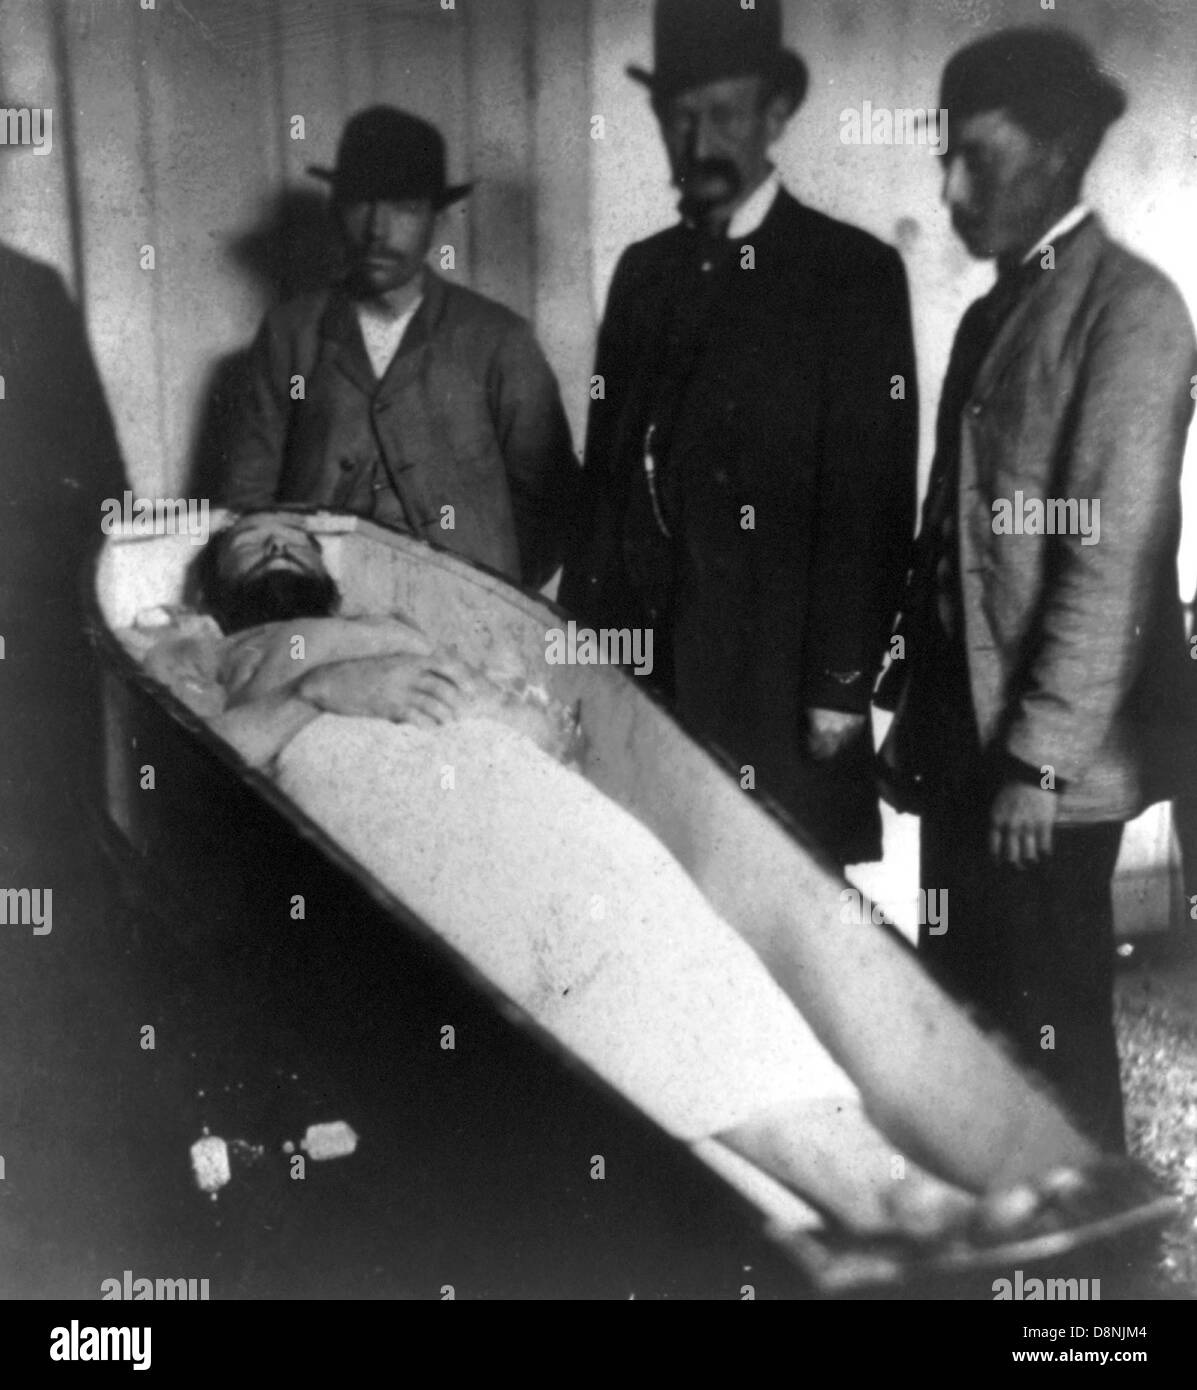 Jesse James muertos en ataúd Foto de stock